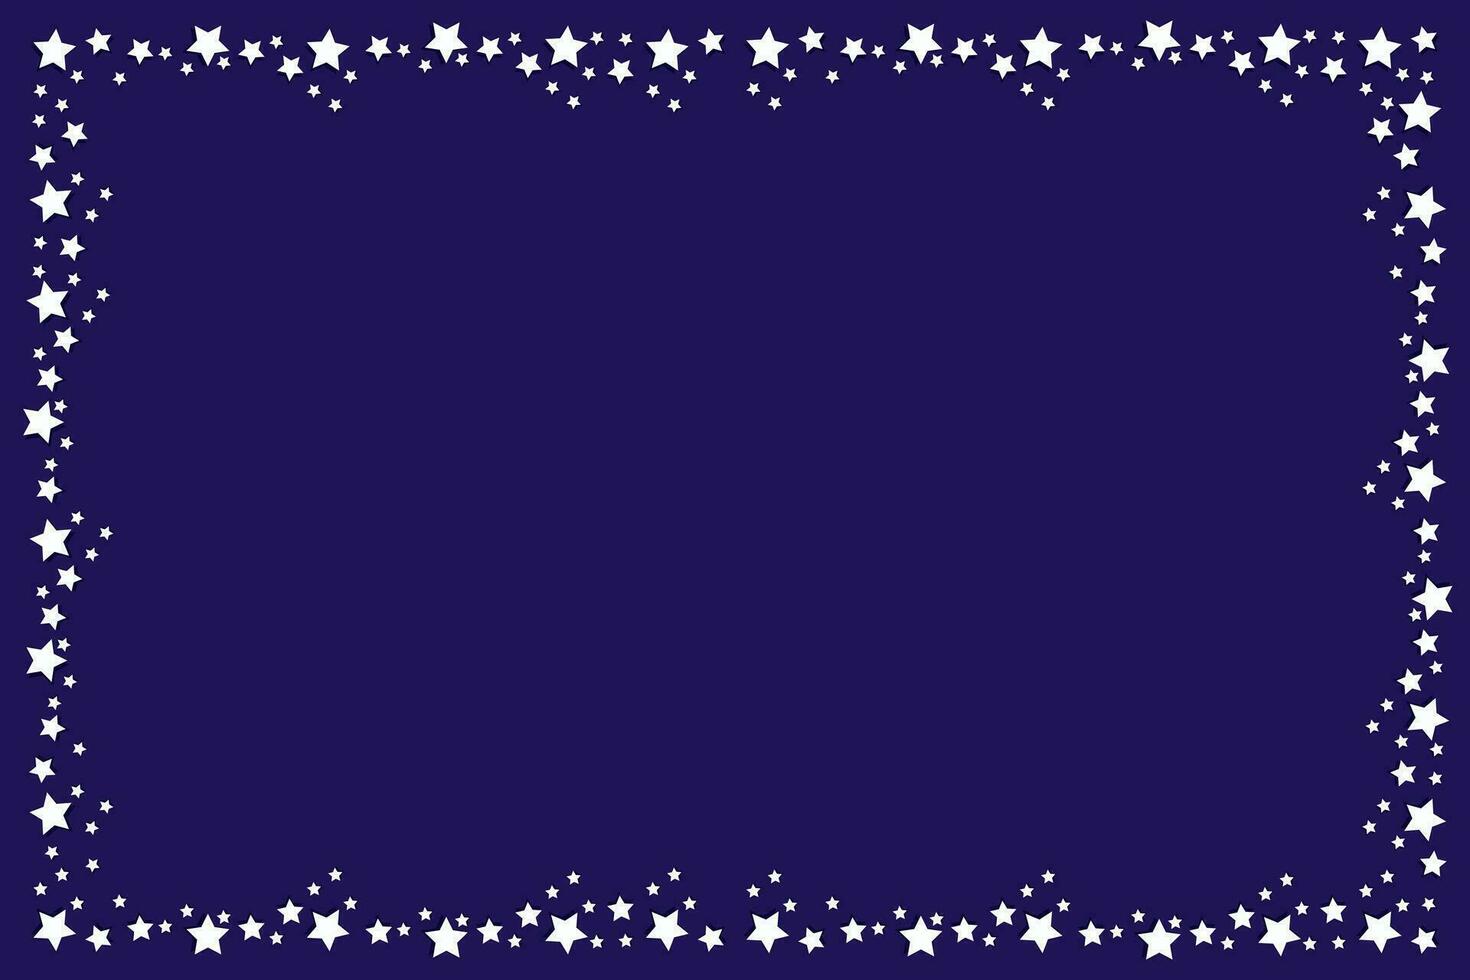 vetor festivo Sombrio azul fundo - vetor retangular Natal Sombrio azul fundo - bandeira com uma quadro, Armação do branco pequeno volumétrico estrelas com espaço para texto